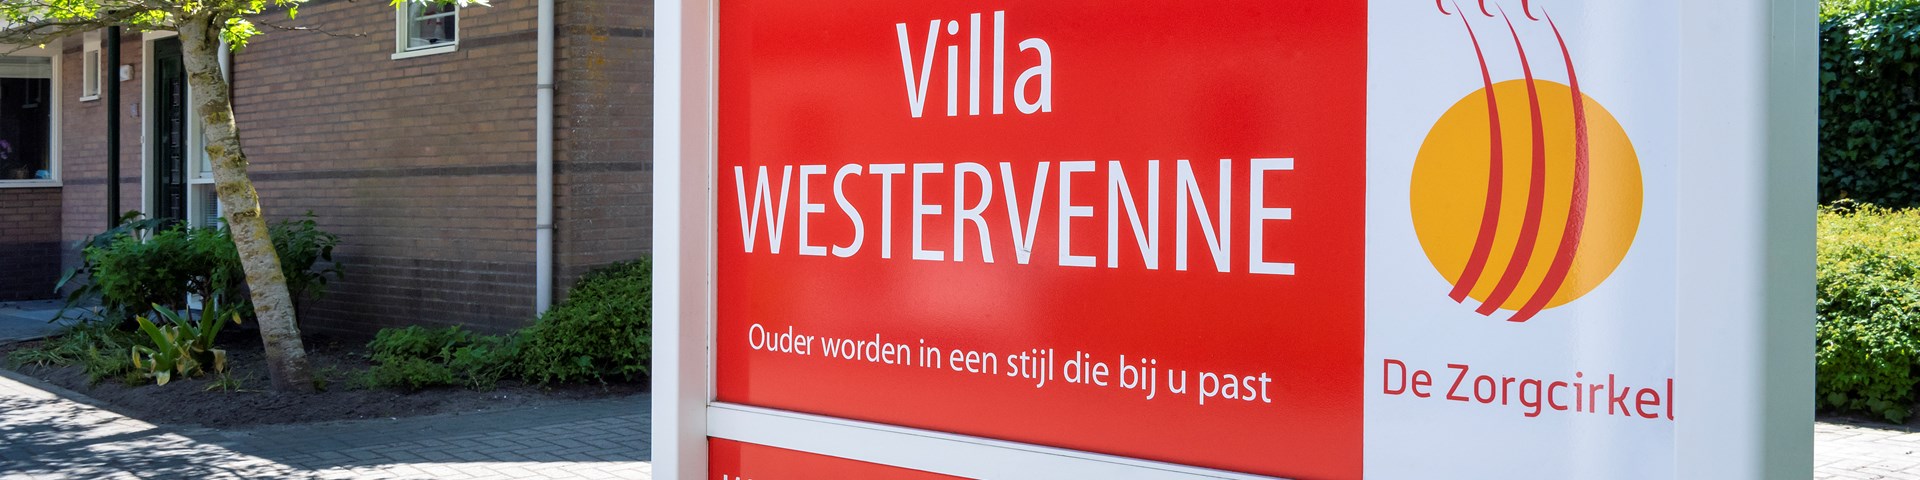 Villa Westervenne_03.jpg